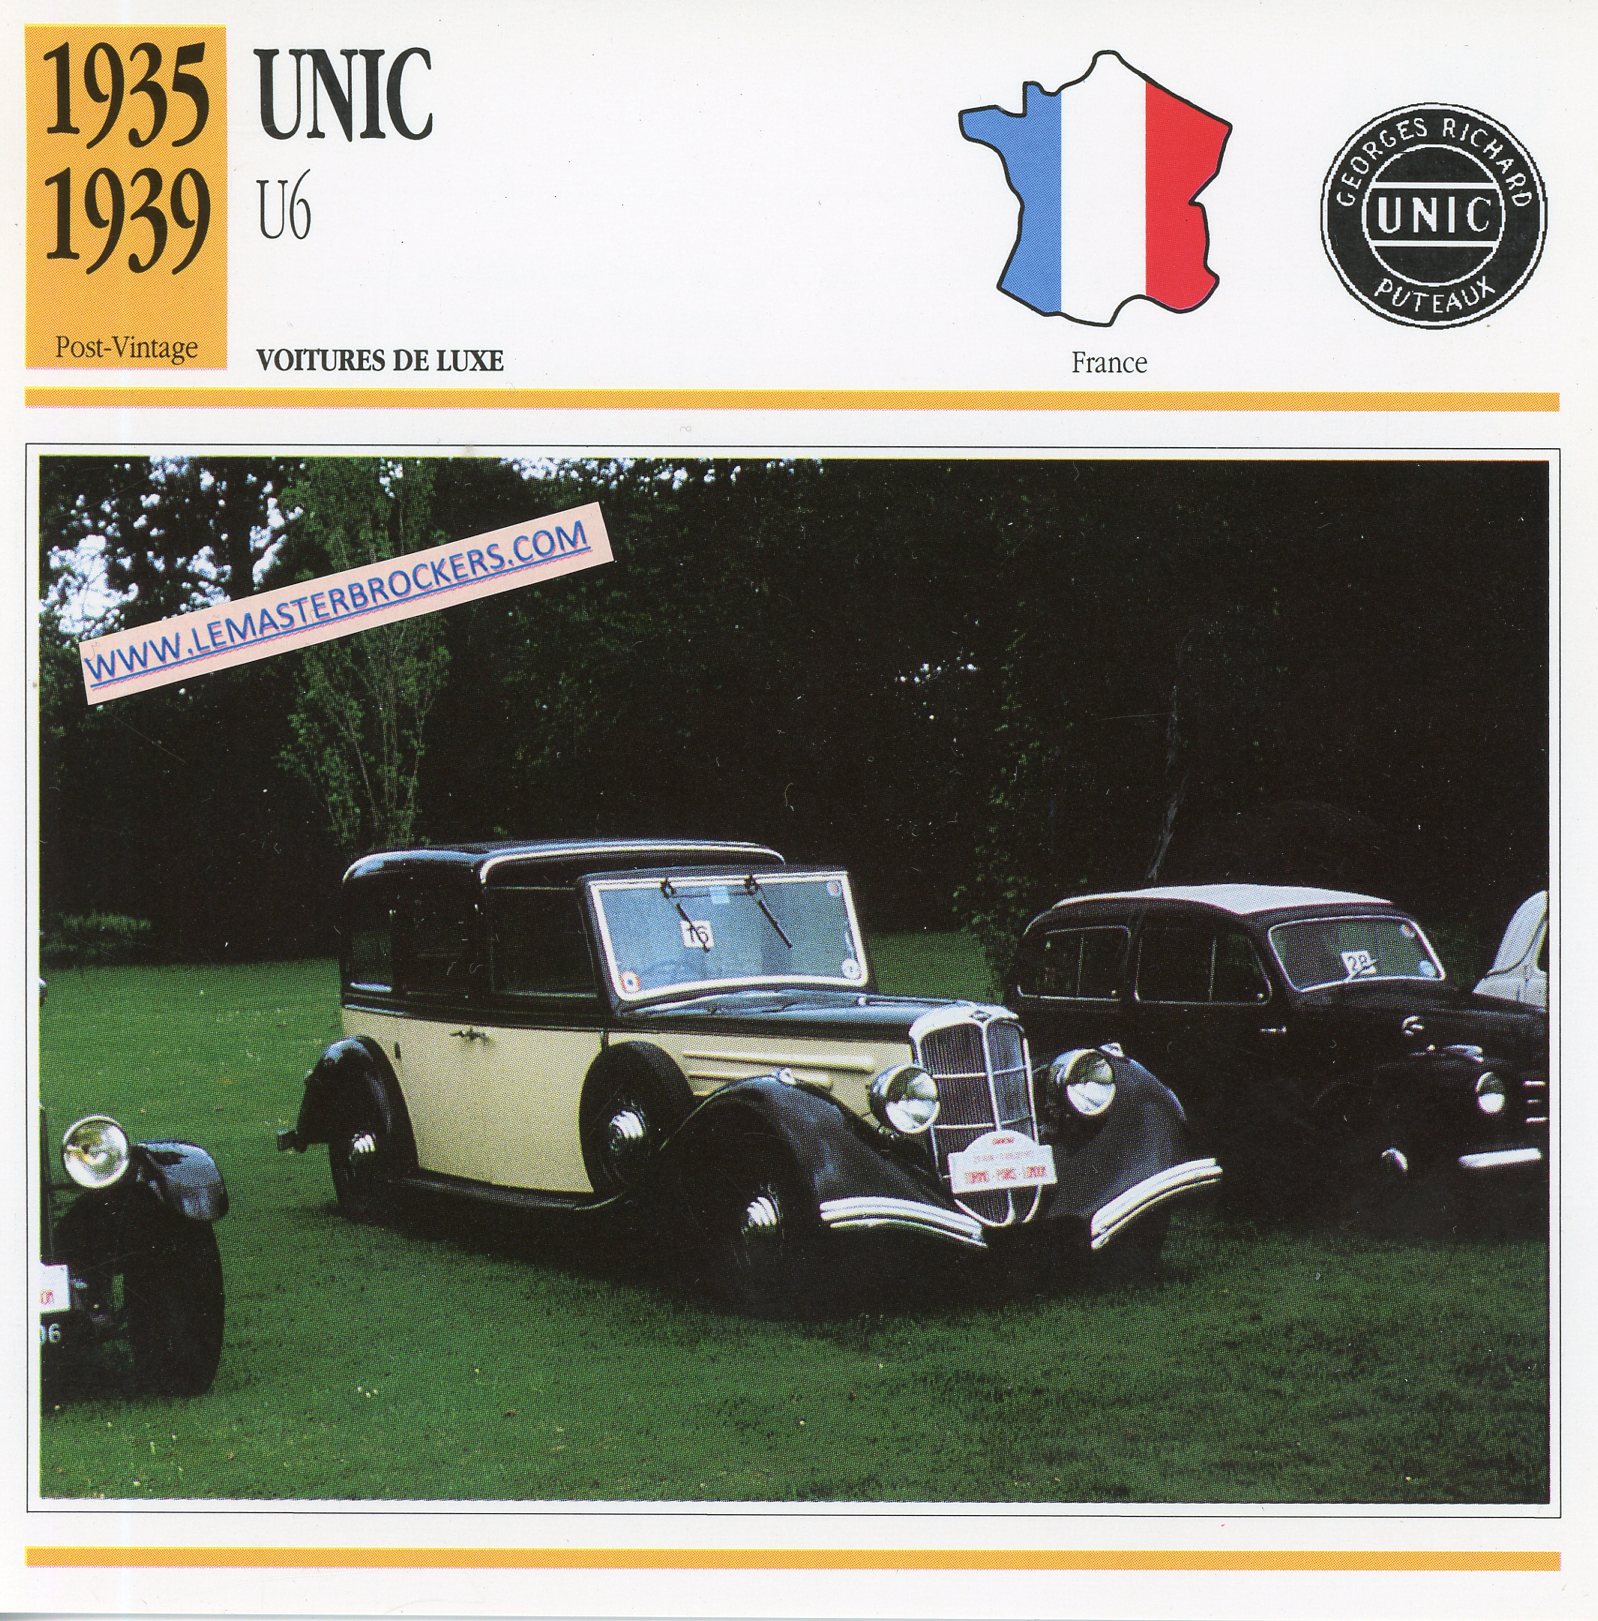 FICHE-AUTO-UNIC-U6-1935-1929-LEMASTERBROCKERS